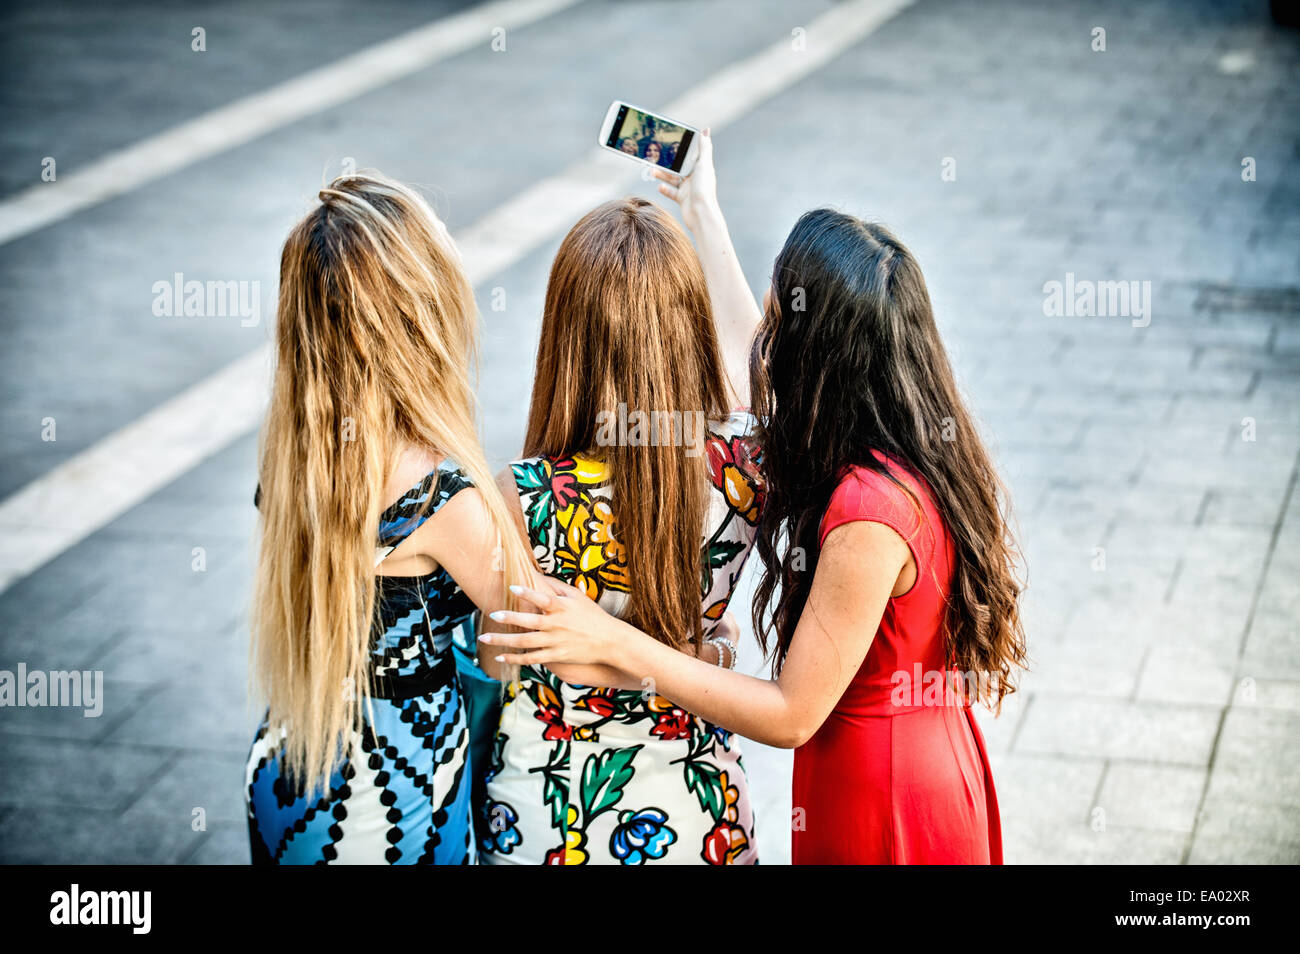 Vista posteriore di tre giovani donne tenendo selfie con lo smartphone, Cagliari, Sardegna, Italia Foto Stock